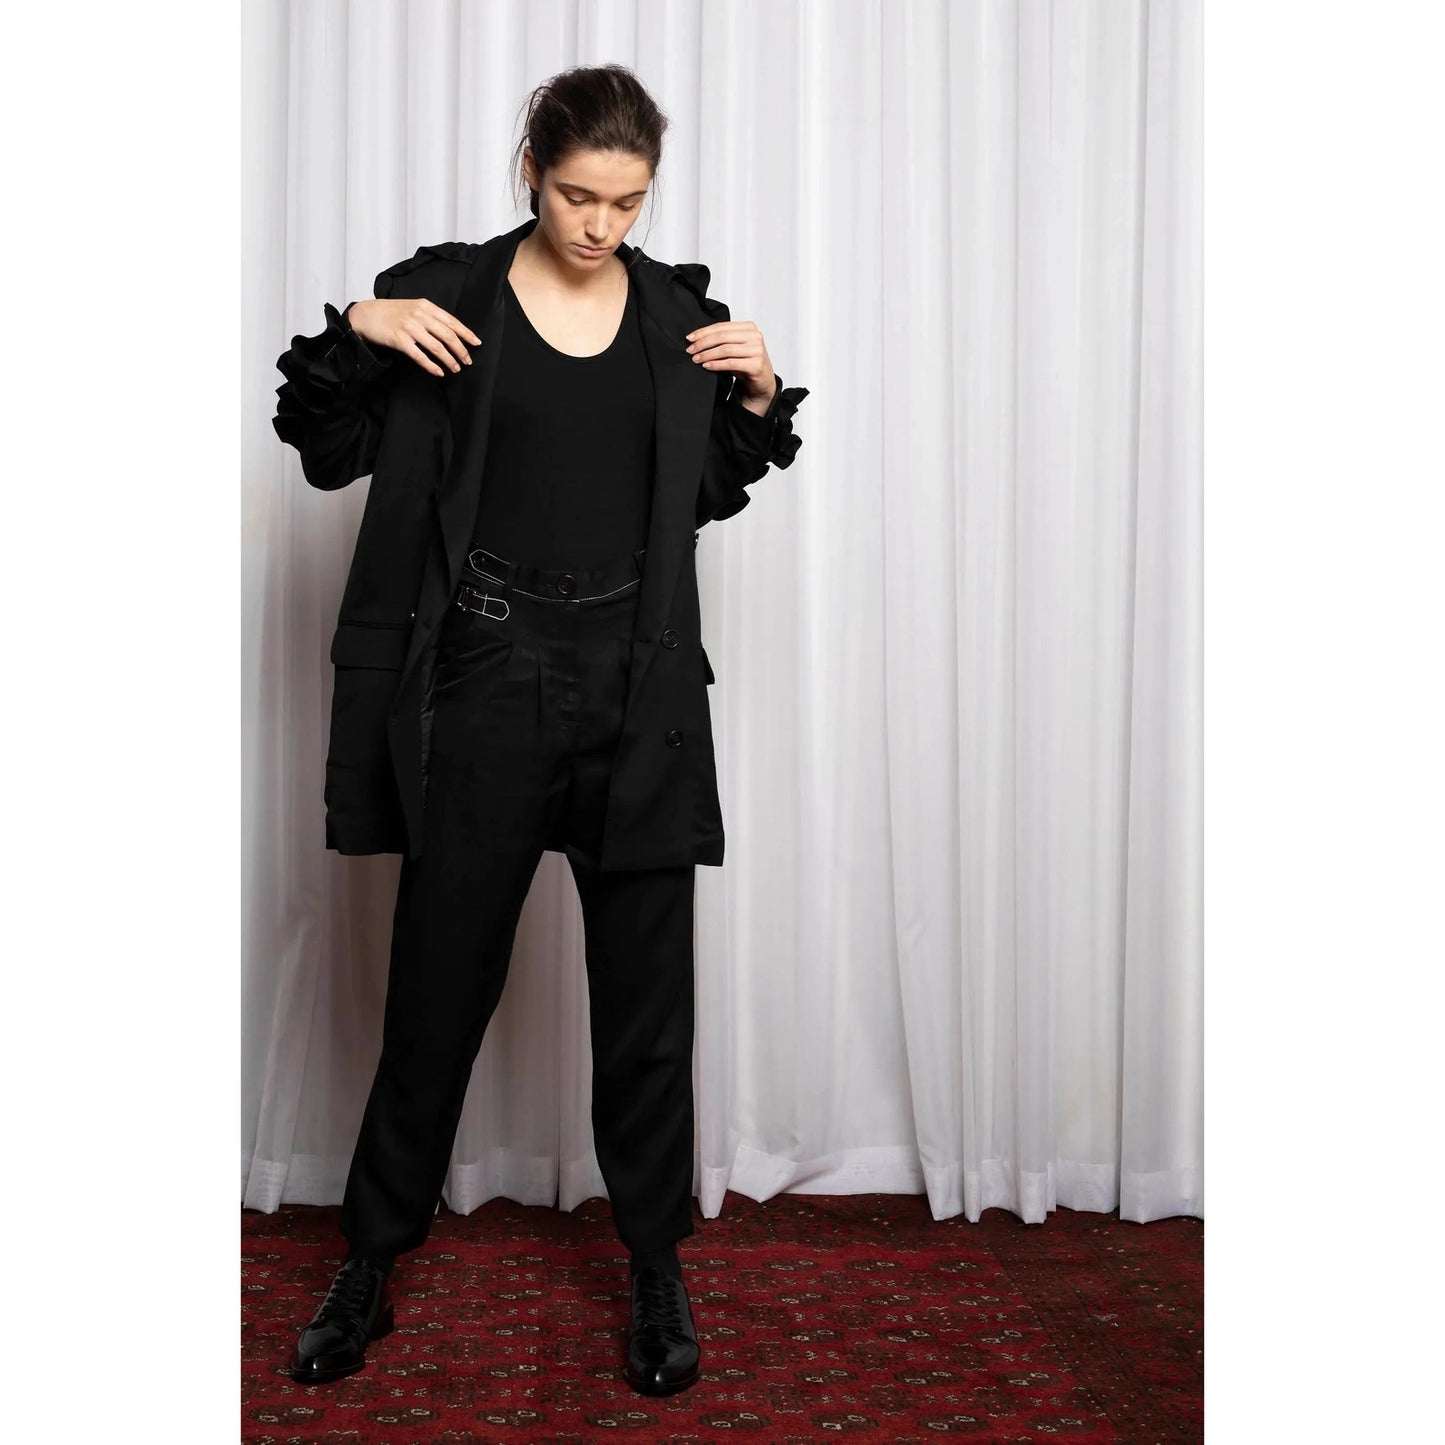 Salasai oversized linen blend black frill blazer | size 8-10 RRP $491